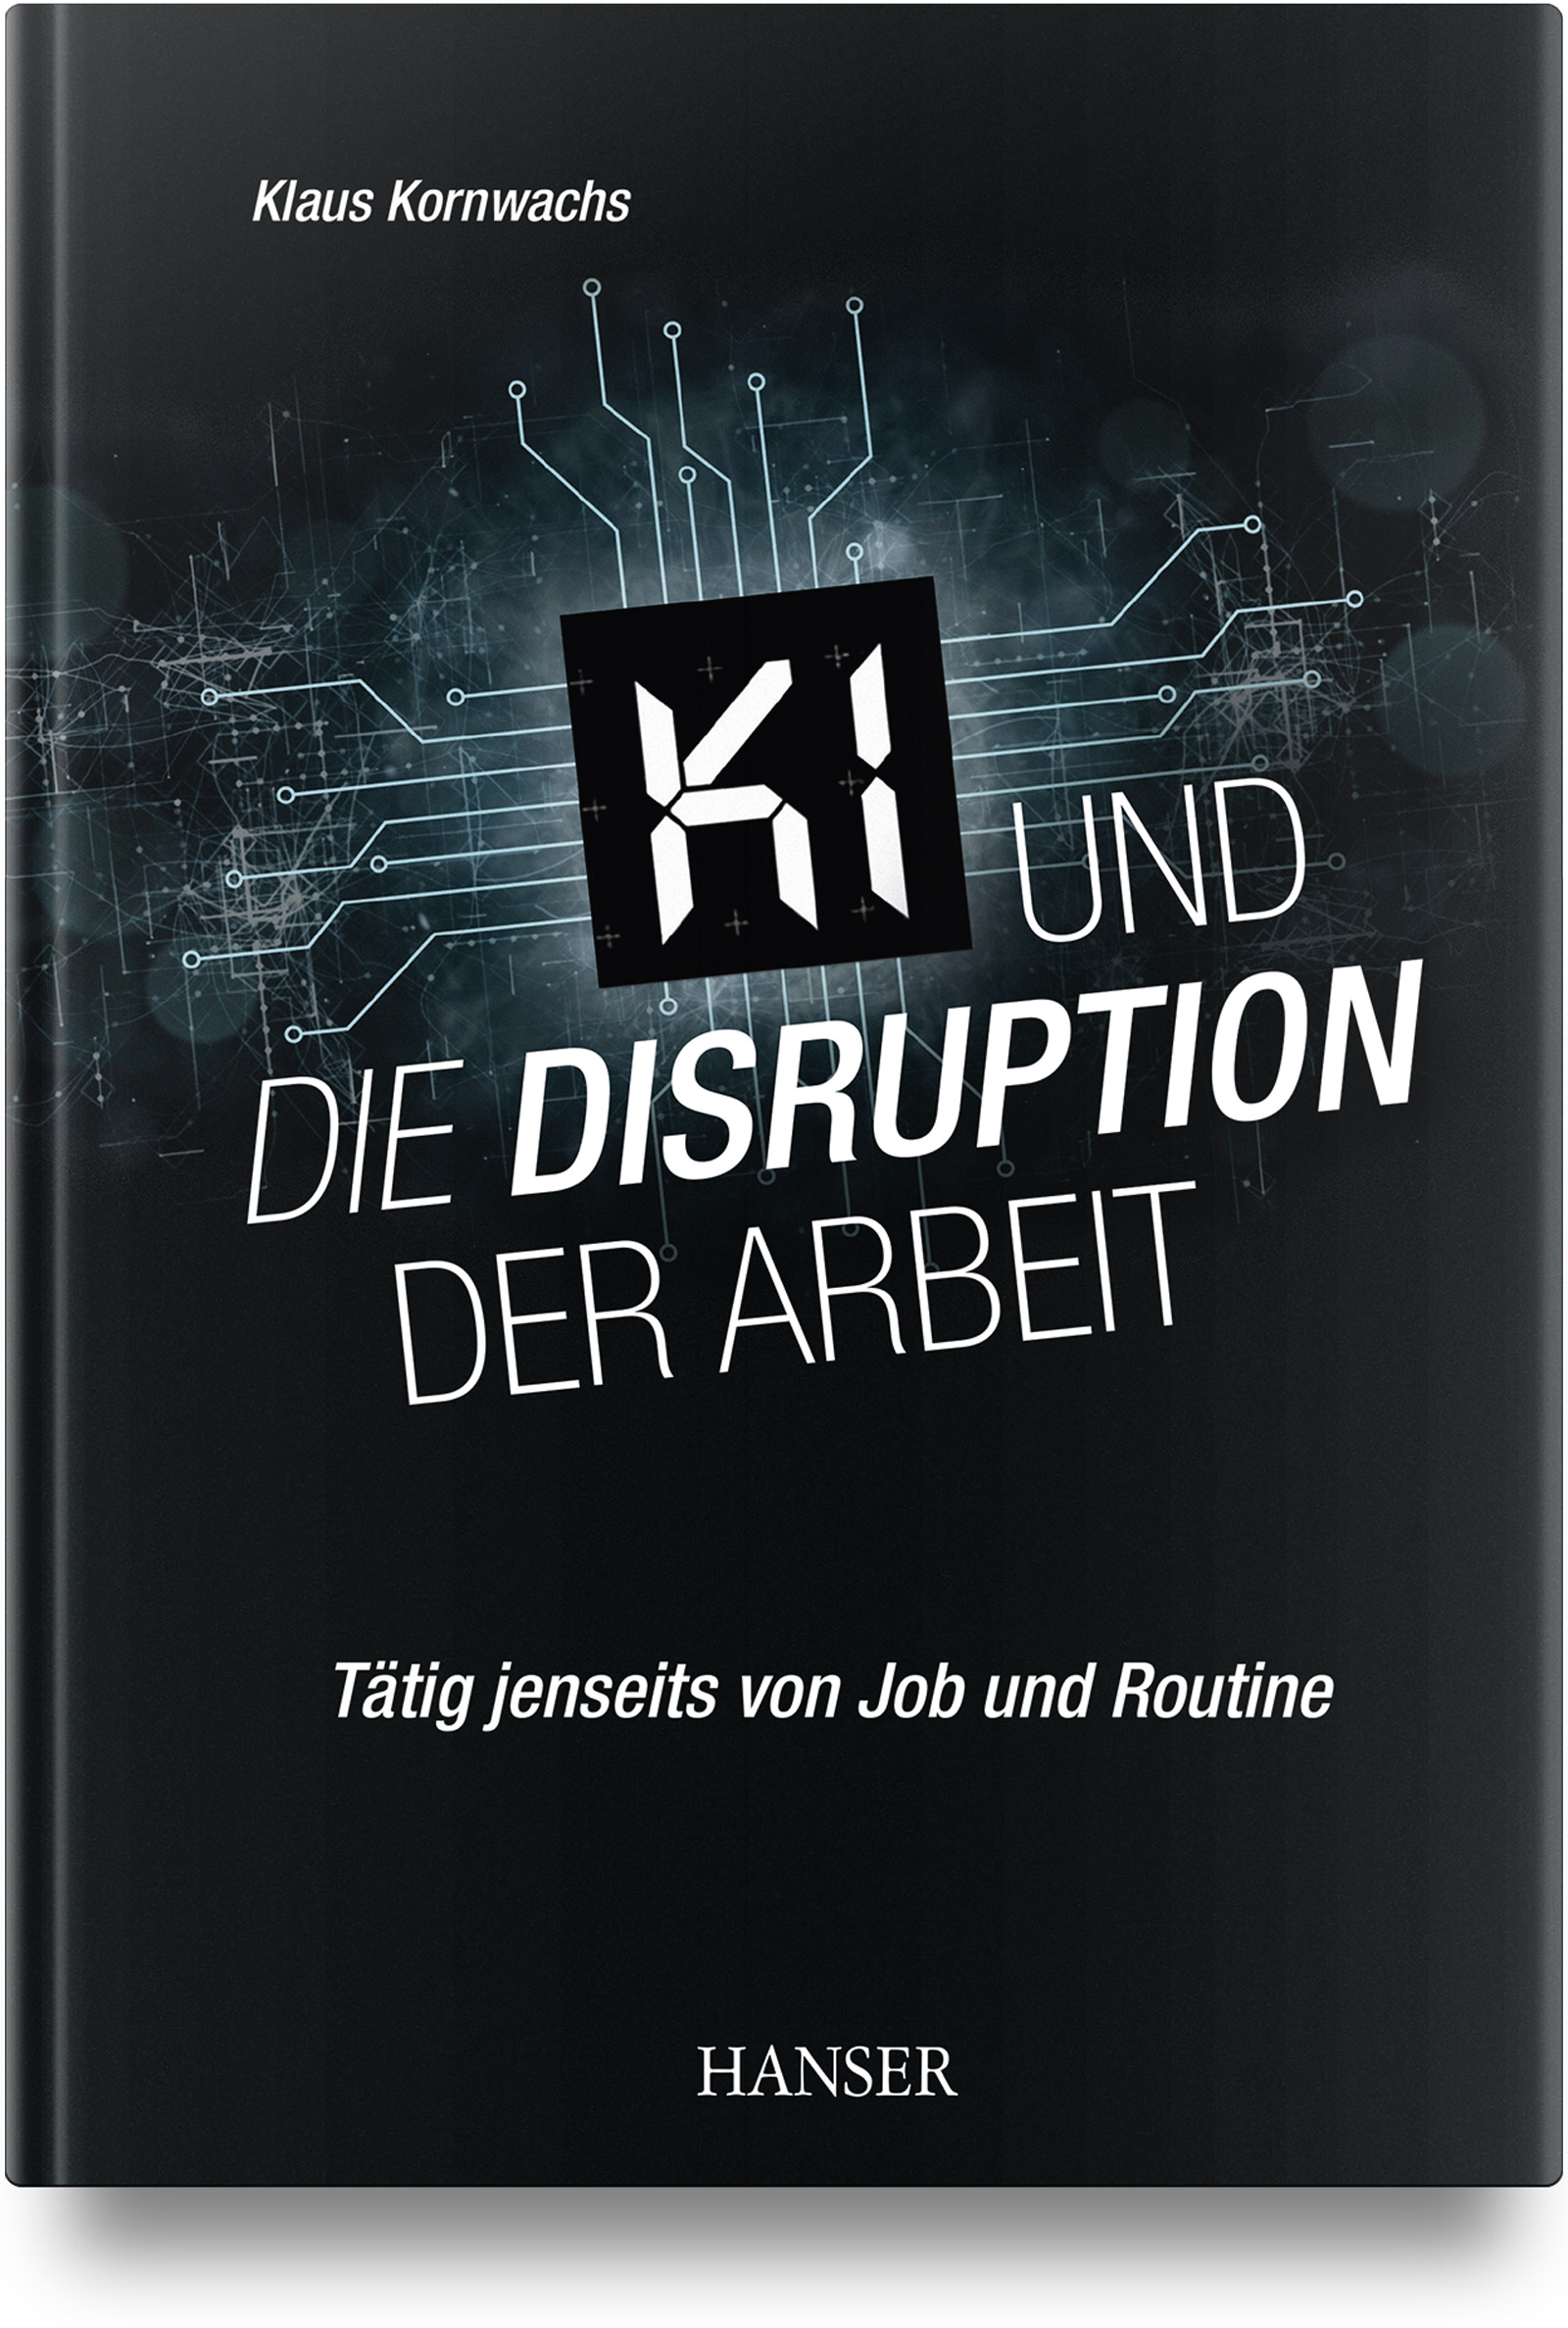 Klaus Kornwachs: KI und die Disruption der Arbeit (Hardcover, Deutsch language, Carl Hanser Verlag)